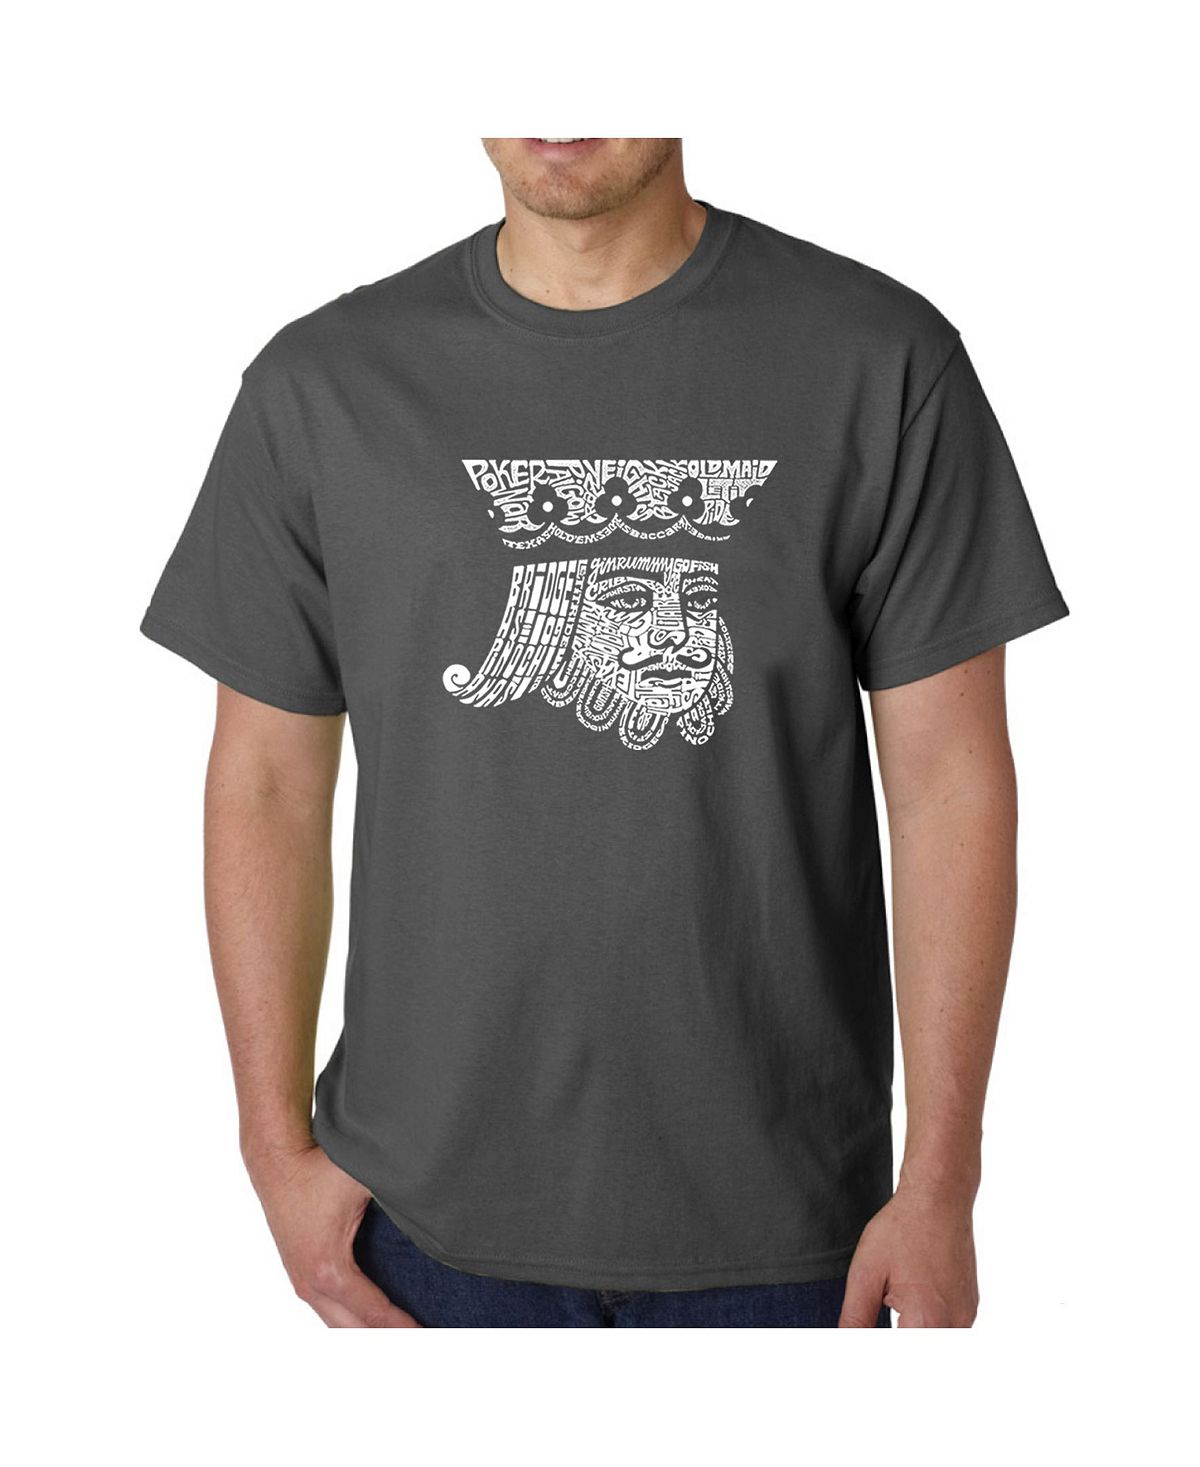 Мужская футболка с рисунком Word Art — Пиковый король LA Pop Art